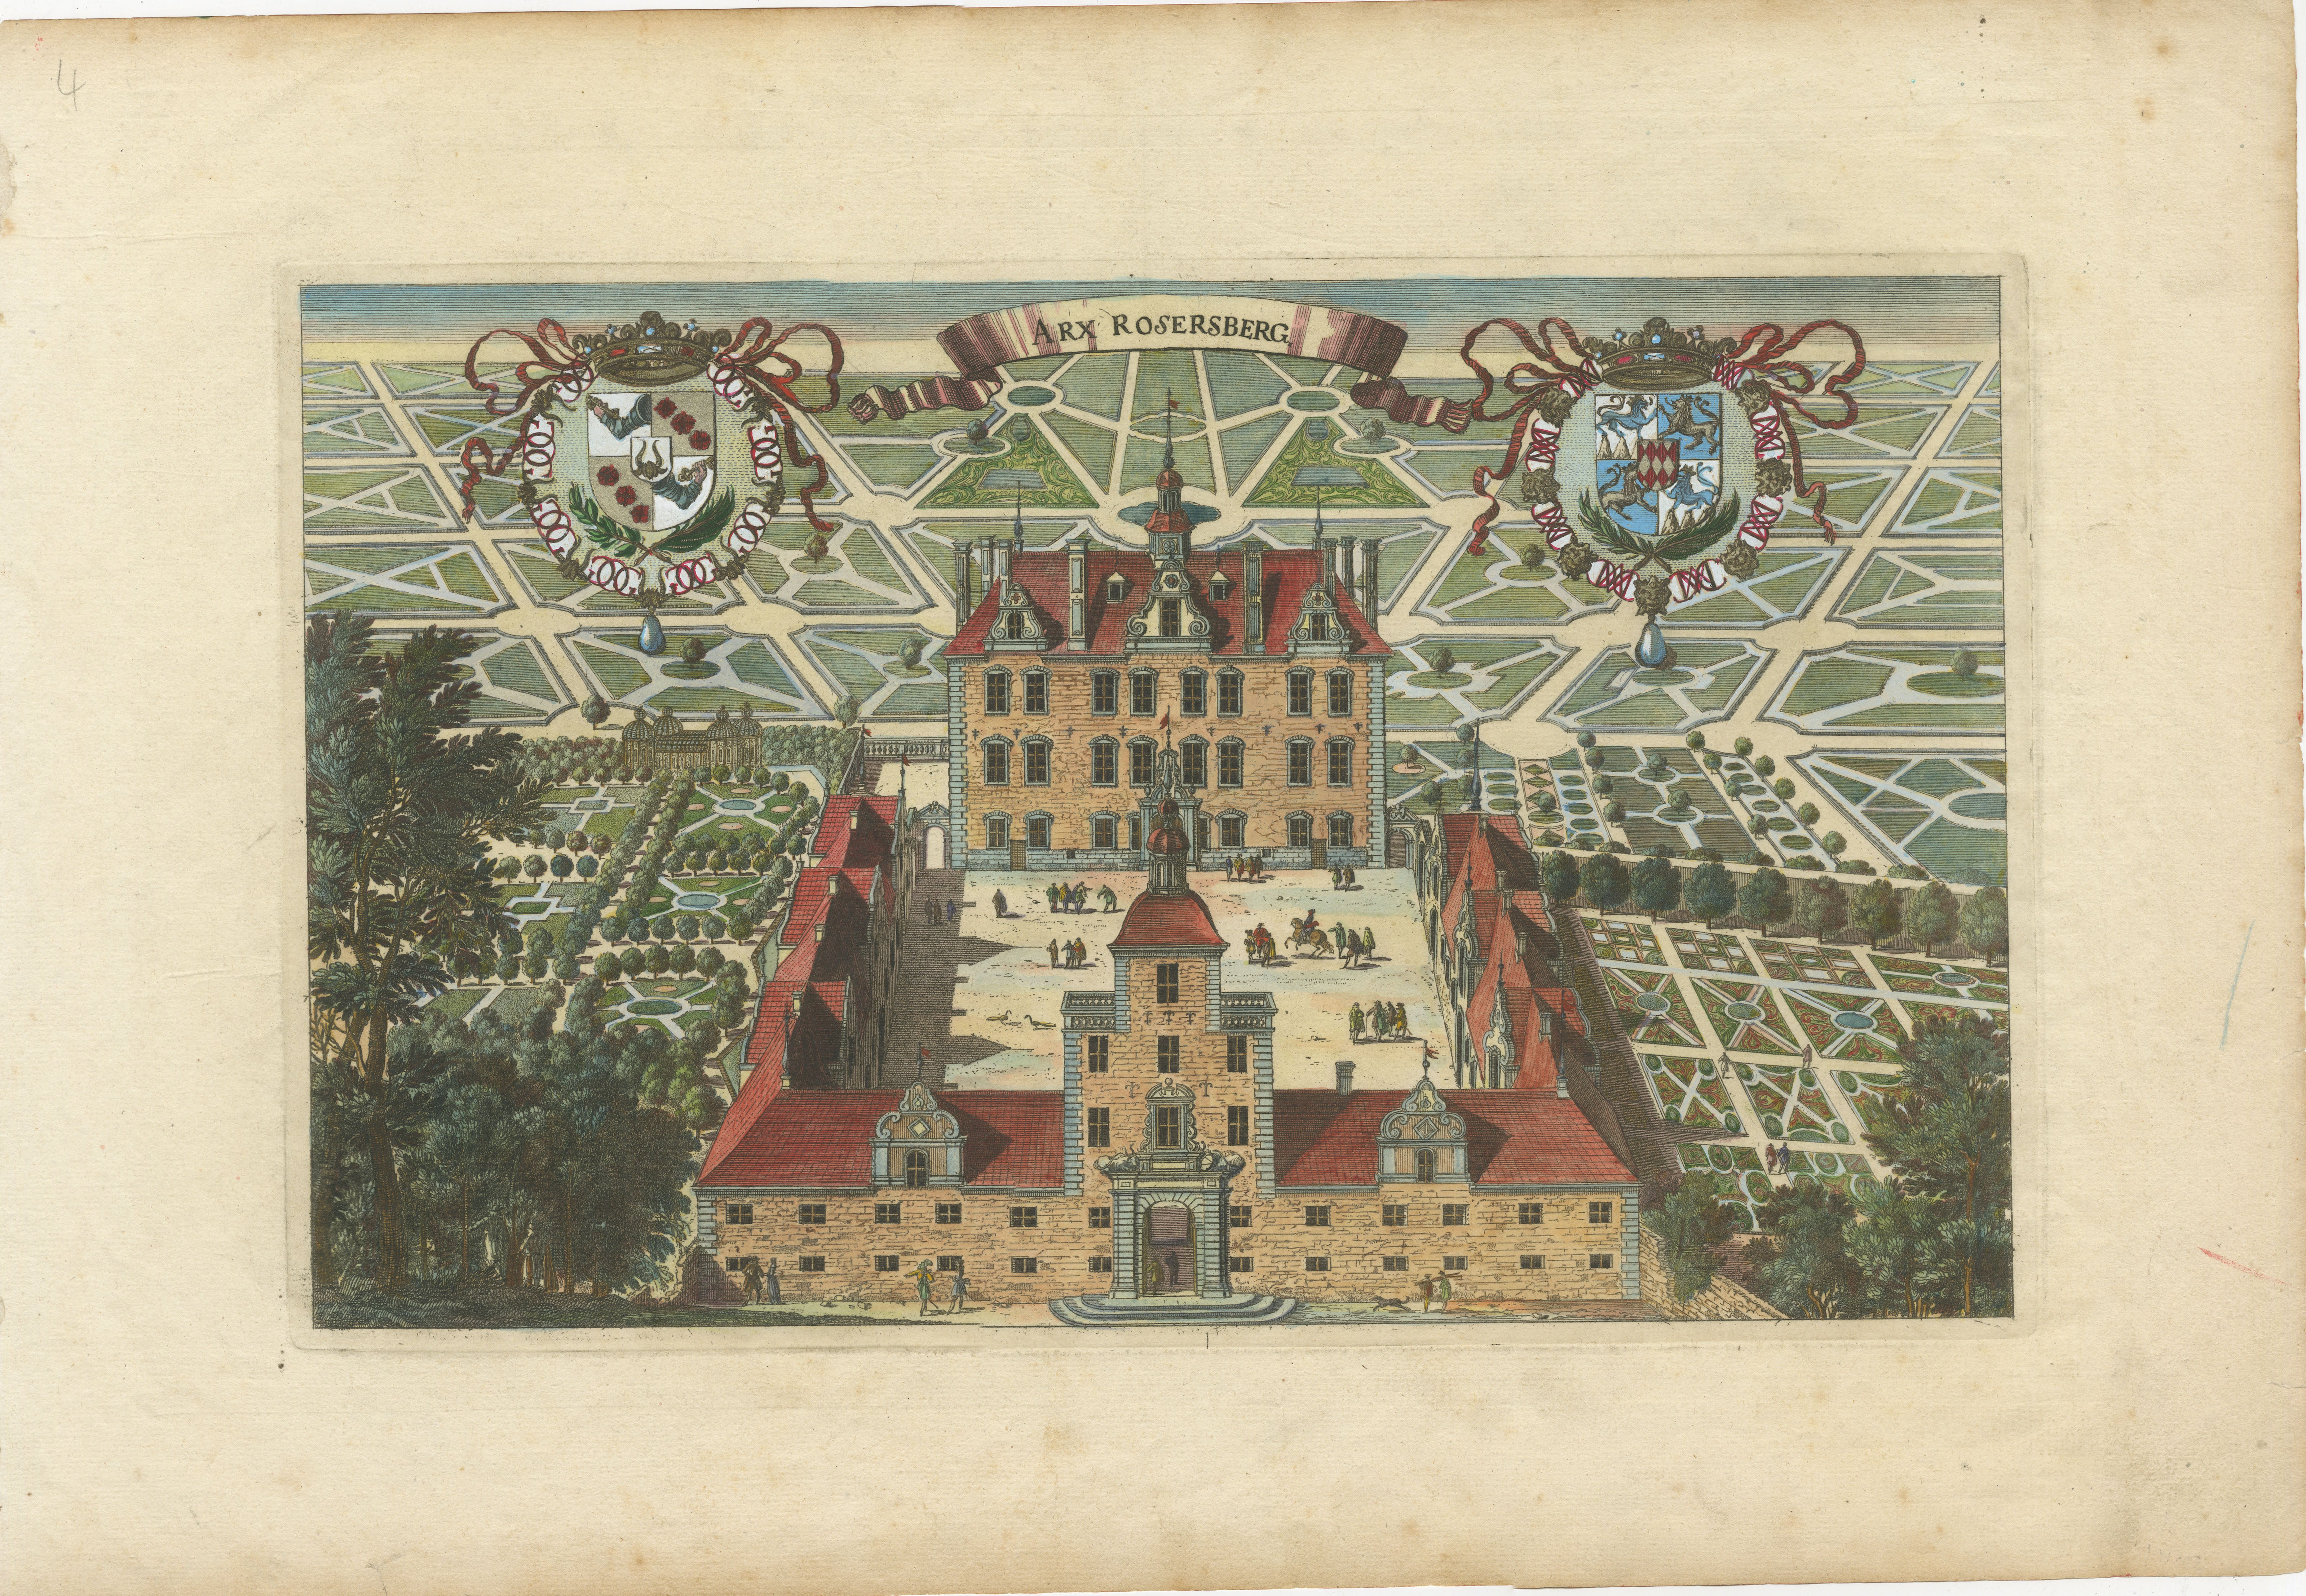 La gravure est une représentation historique du château de Rosersberg, un domaine baroque situé en Suède. Ces gravures, souvent créées dans les années 1690 dans le cadre de la collection d'Erik Dahlberg, présentent généralement une vue à vol